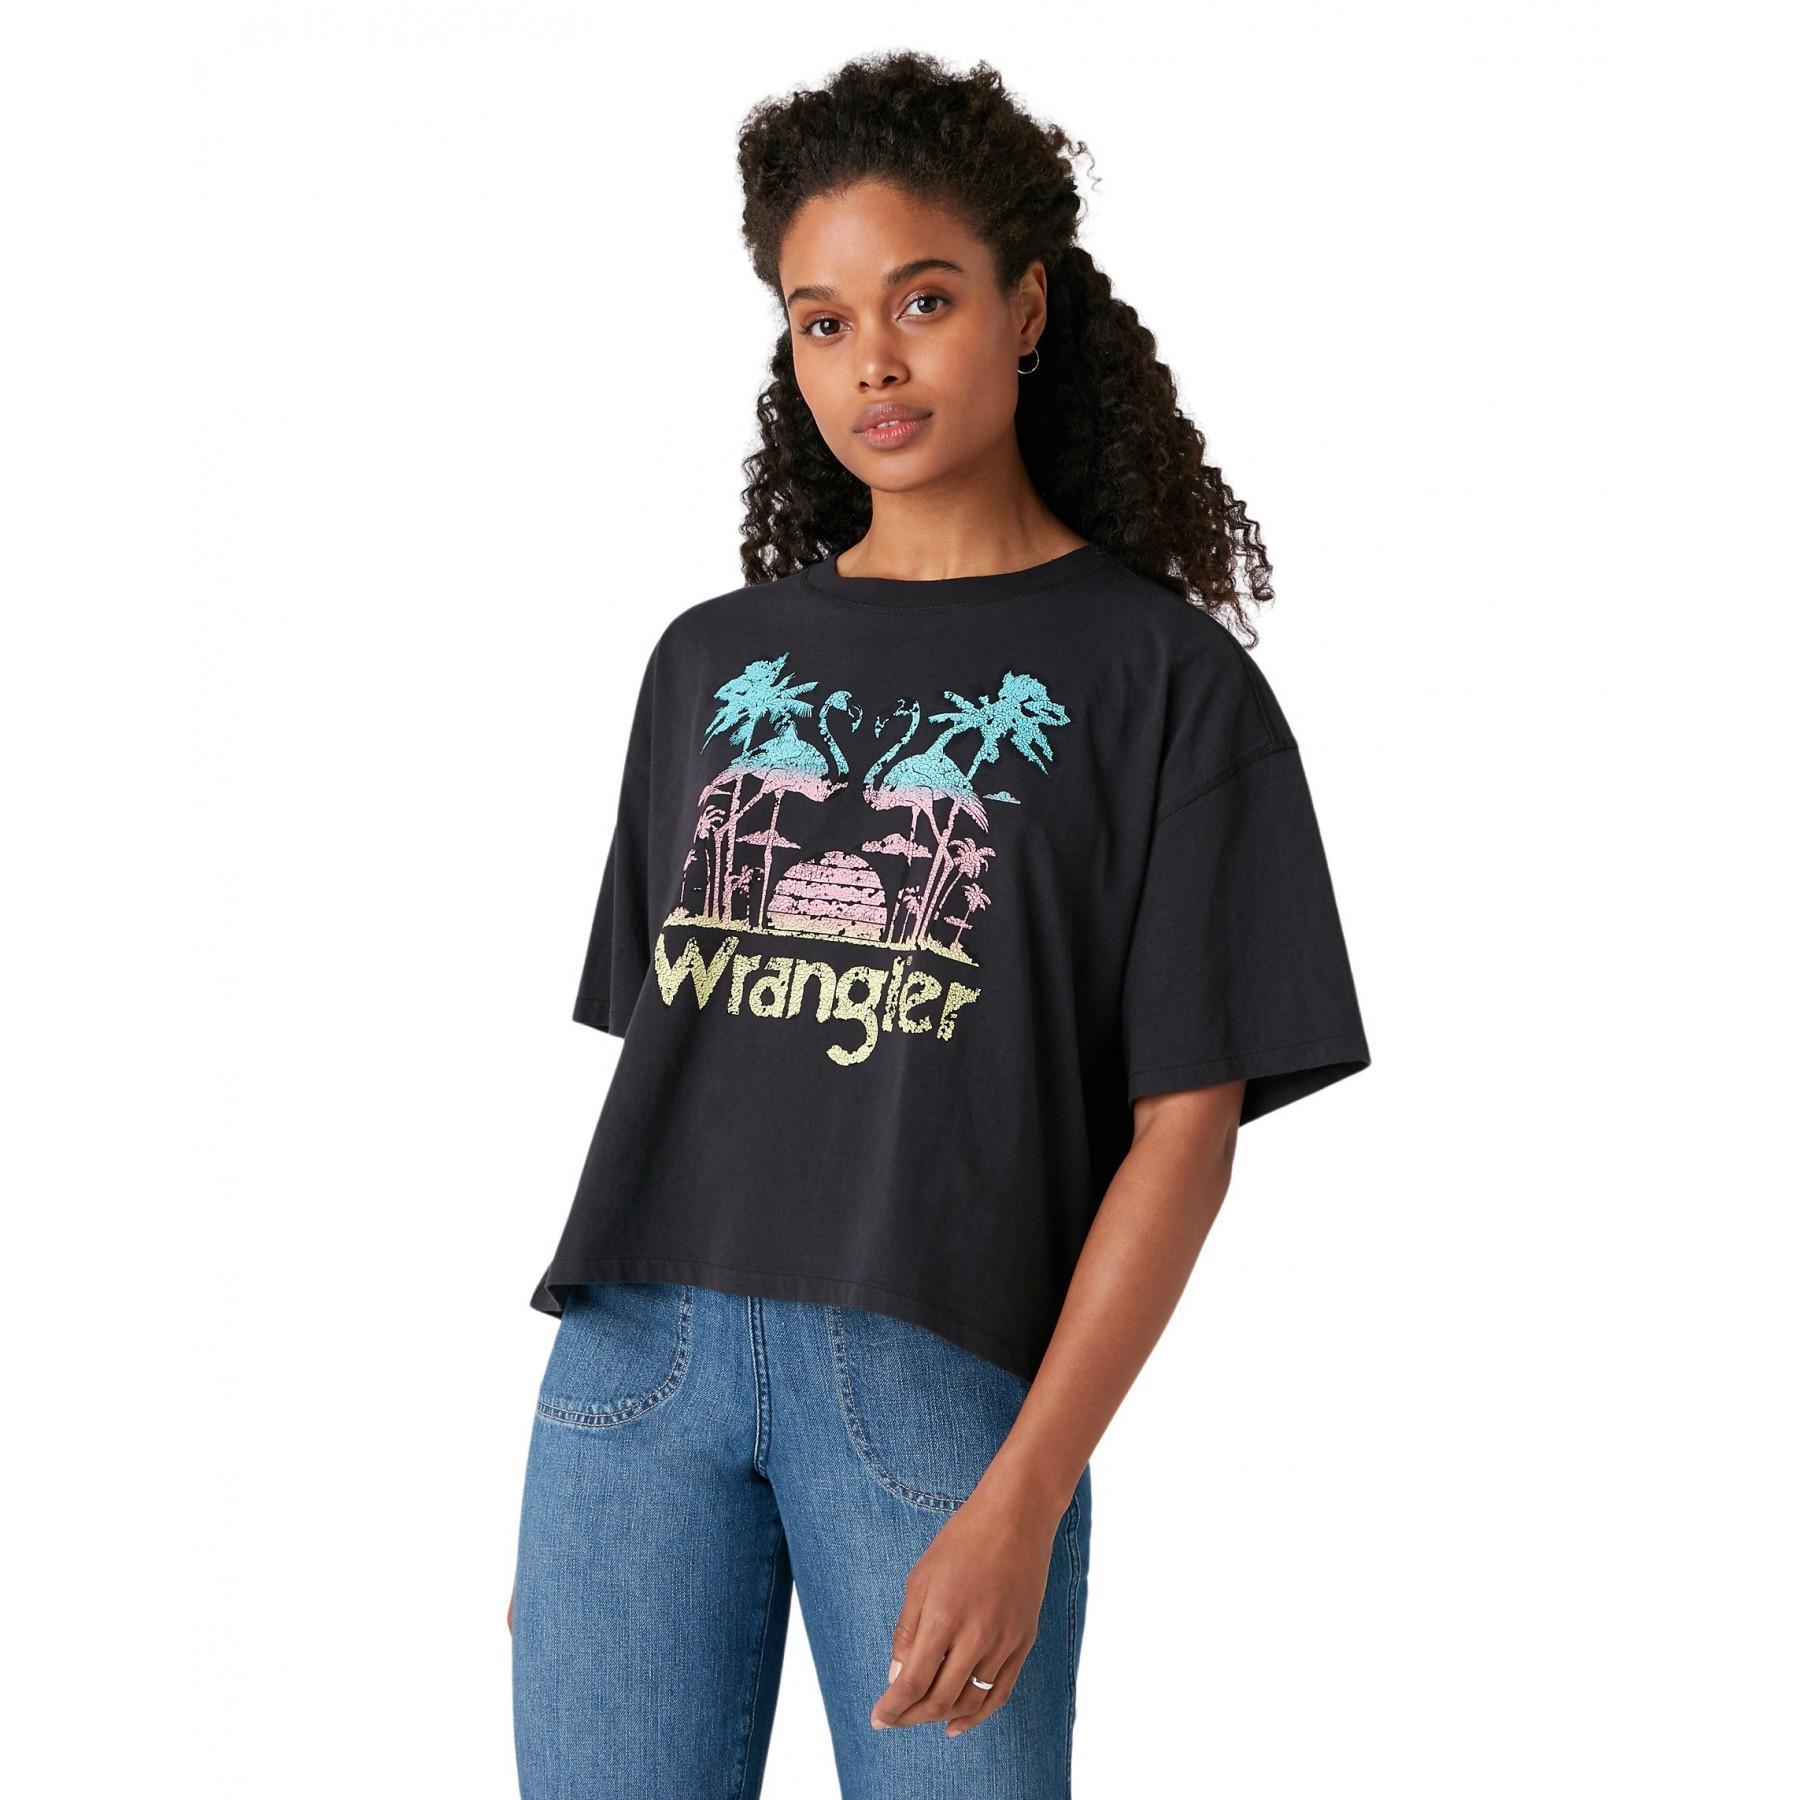 Women's T-shirt Wrangler Boxy